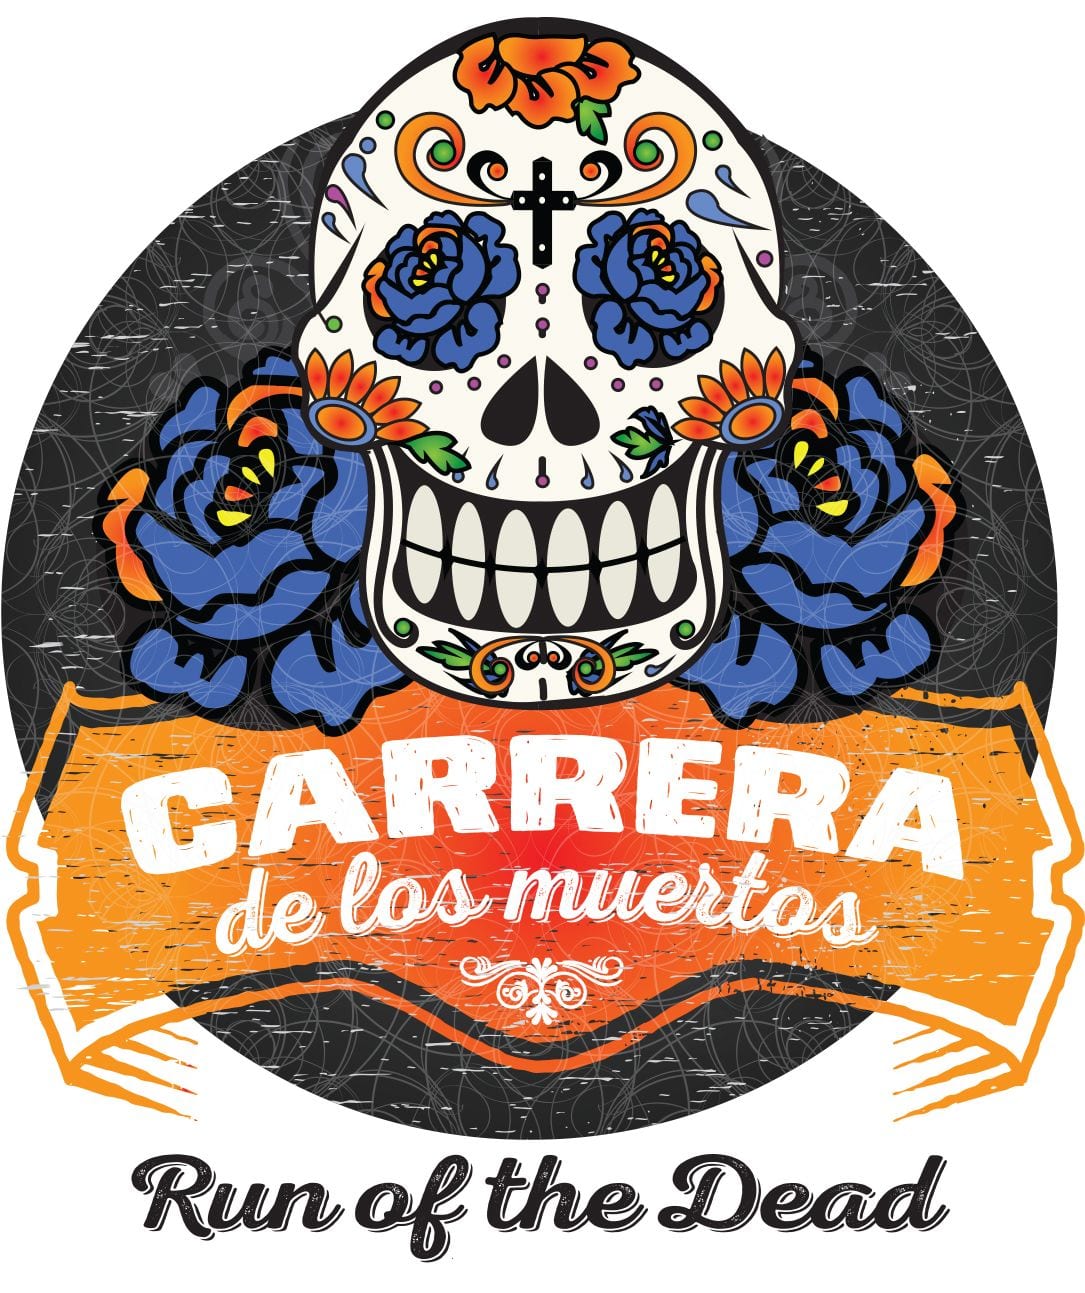 Carrera de los Muertos San Diego logo on RaceRaves